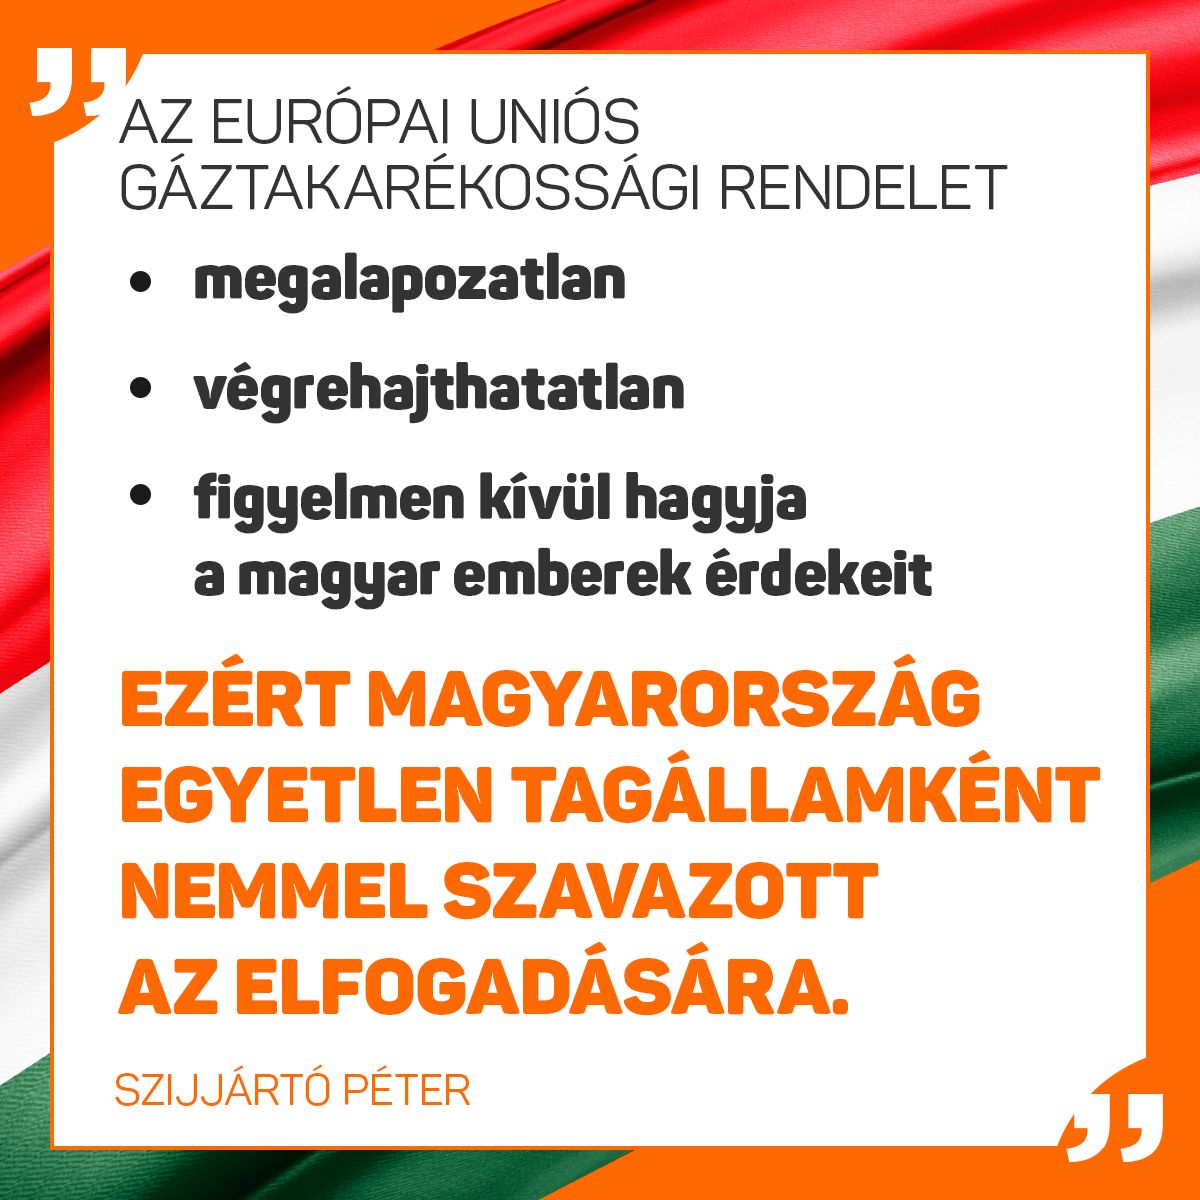 Az európai uniós gáztakarékossági rendelet megalapozatlan, ﻿végrehajthatatlan és teljes mértékben figyelmen kívül hagyja a magyar ﻿emberek érdekeit, ezért Magyarország egyetlen tagállamként nemmel szavazott﻿ az elfogadására – közölte Szijjártó Péter kedden Brüsszelben.